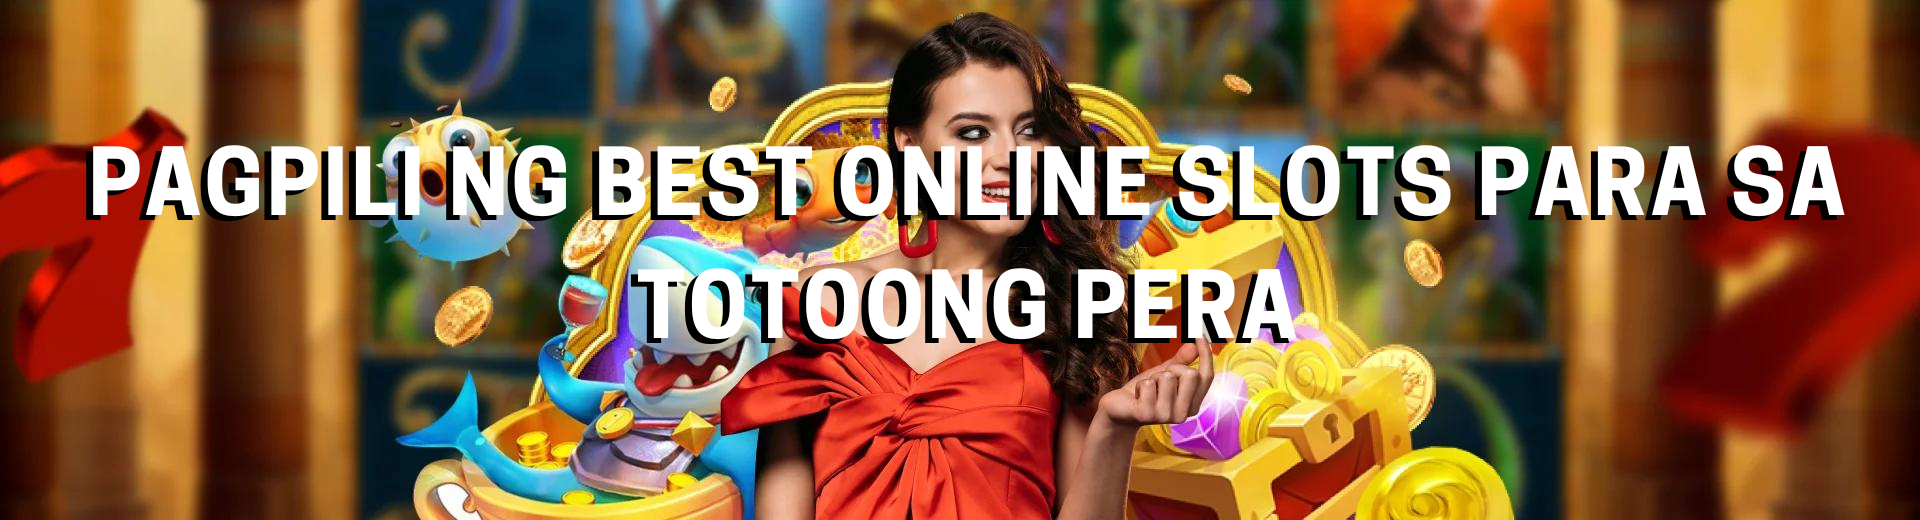 Pagpili ng Best Online Slots Para sa Totoong Pera 